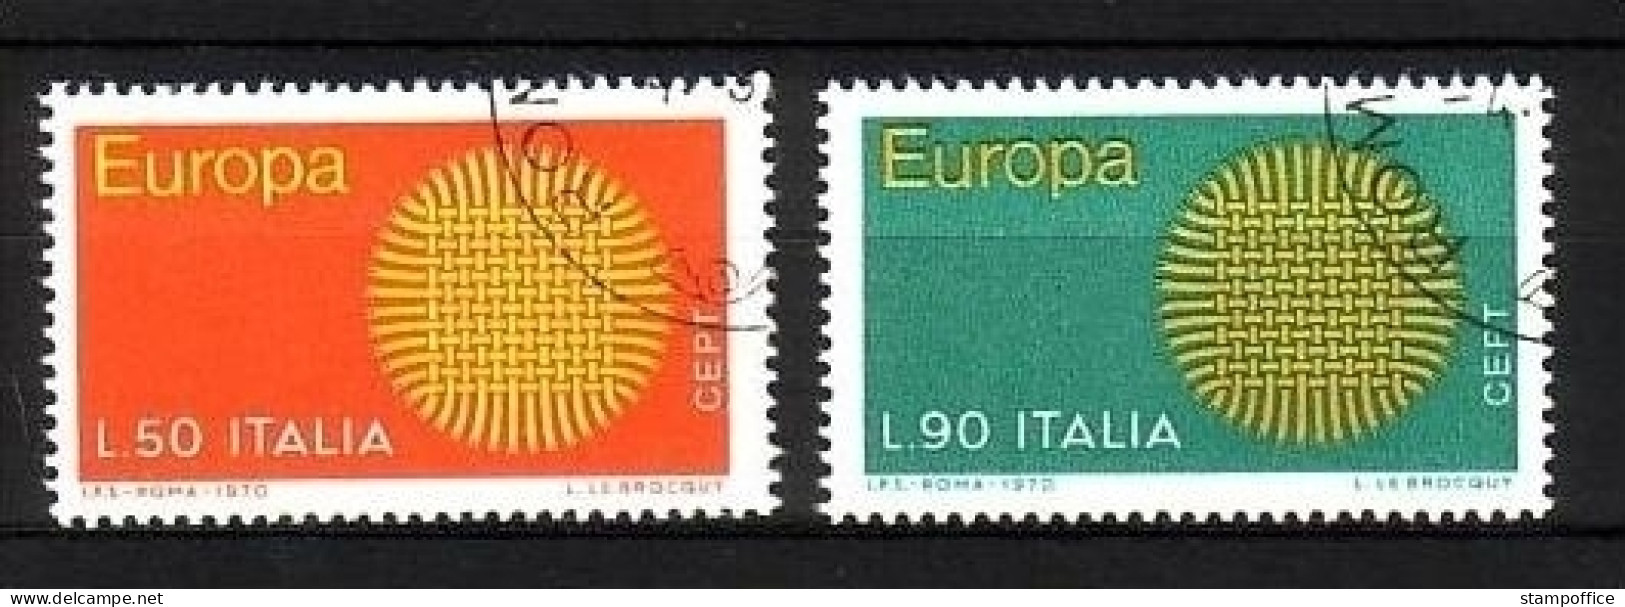 ITALIEN MI-NR. 1309-1310 O EUROPA 1970 SONNENSYMBOL - 1970